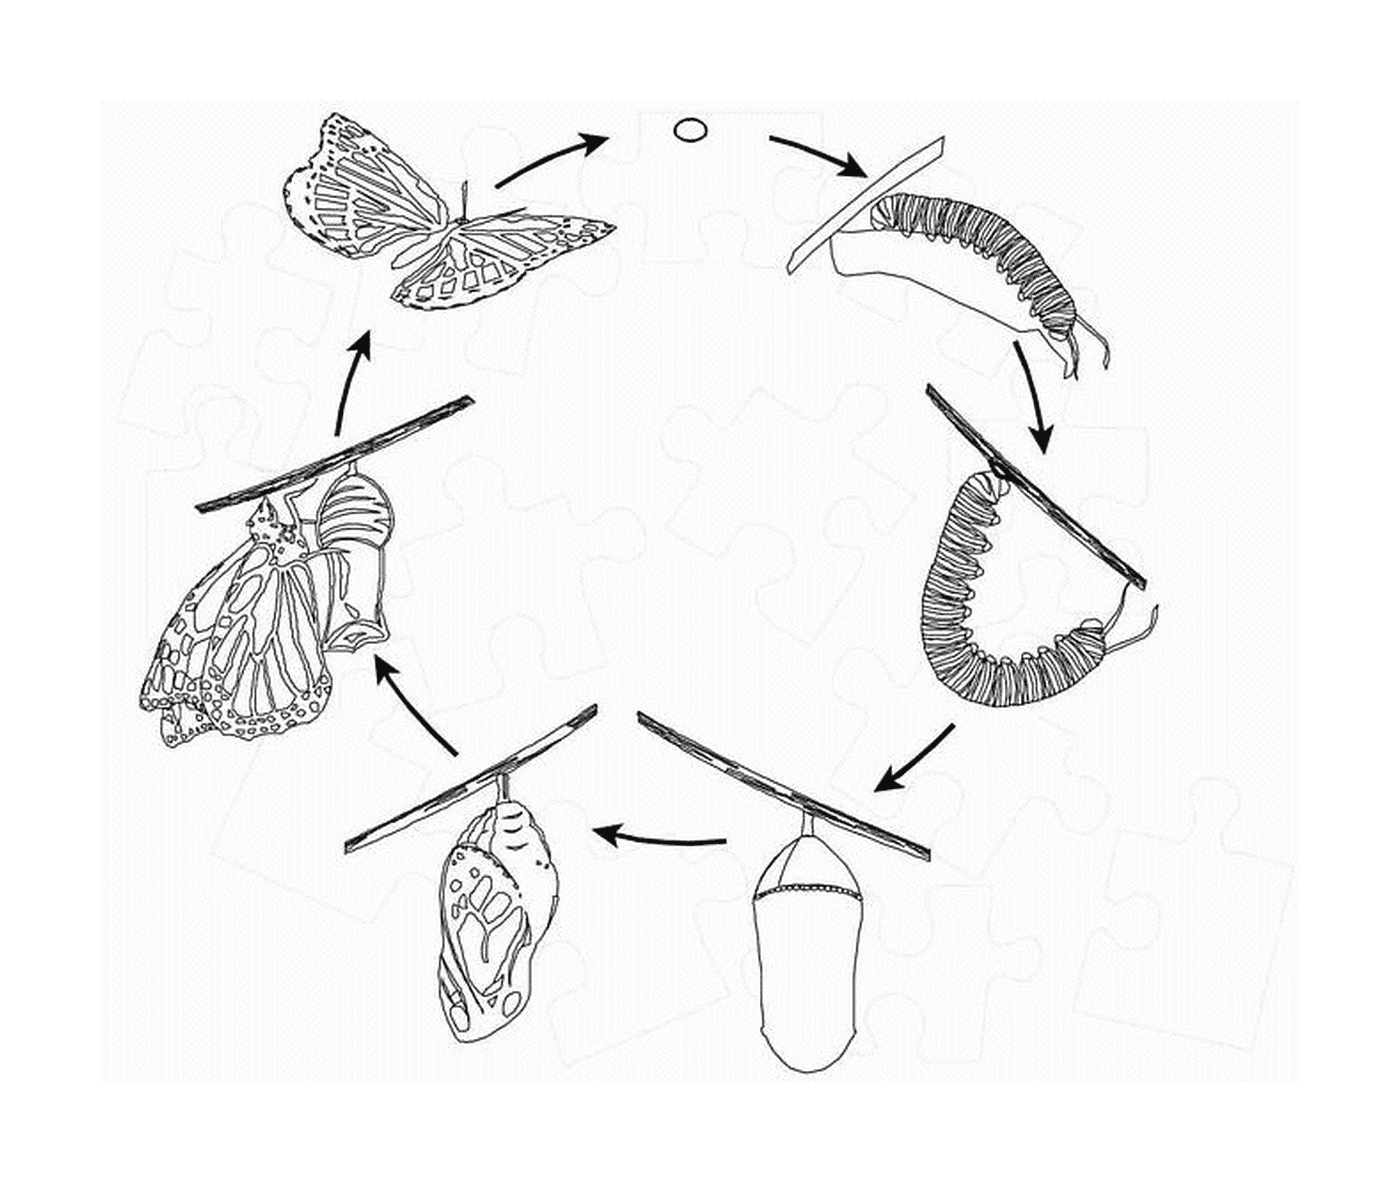  ciclo de vida borboleta 